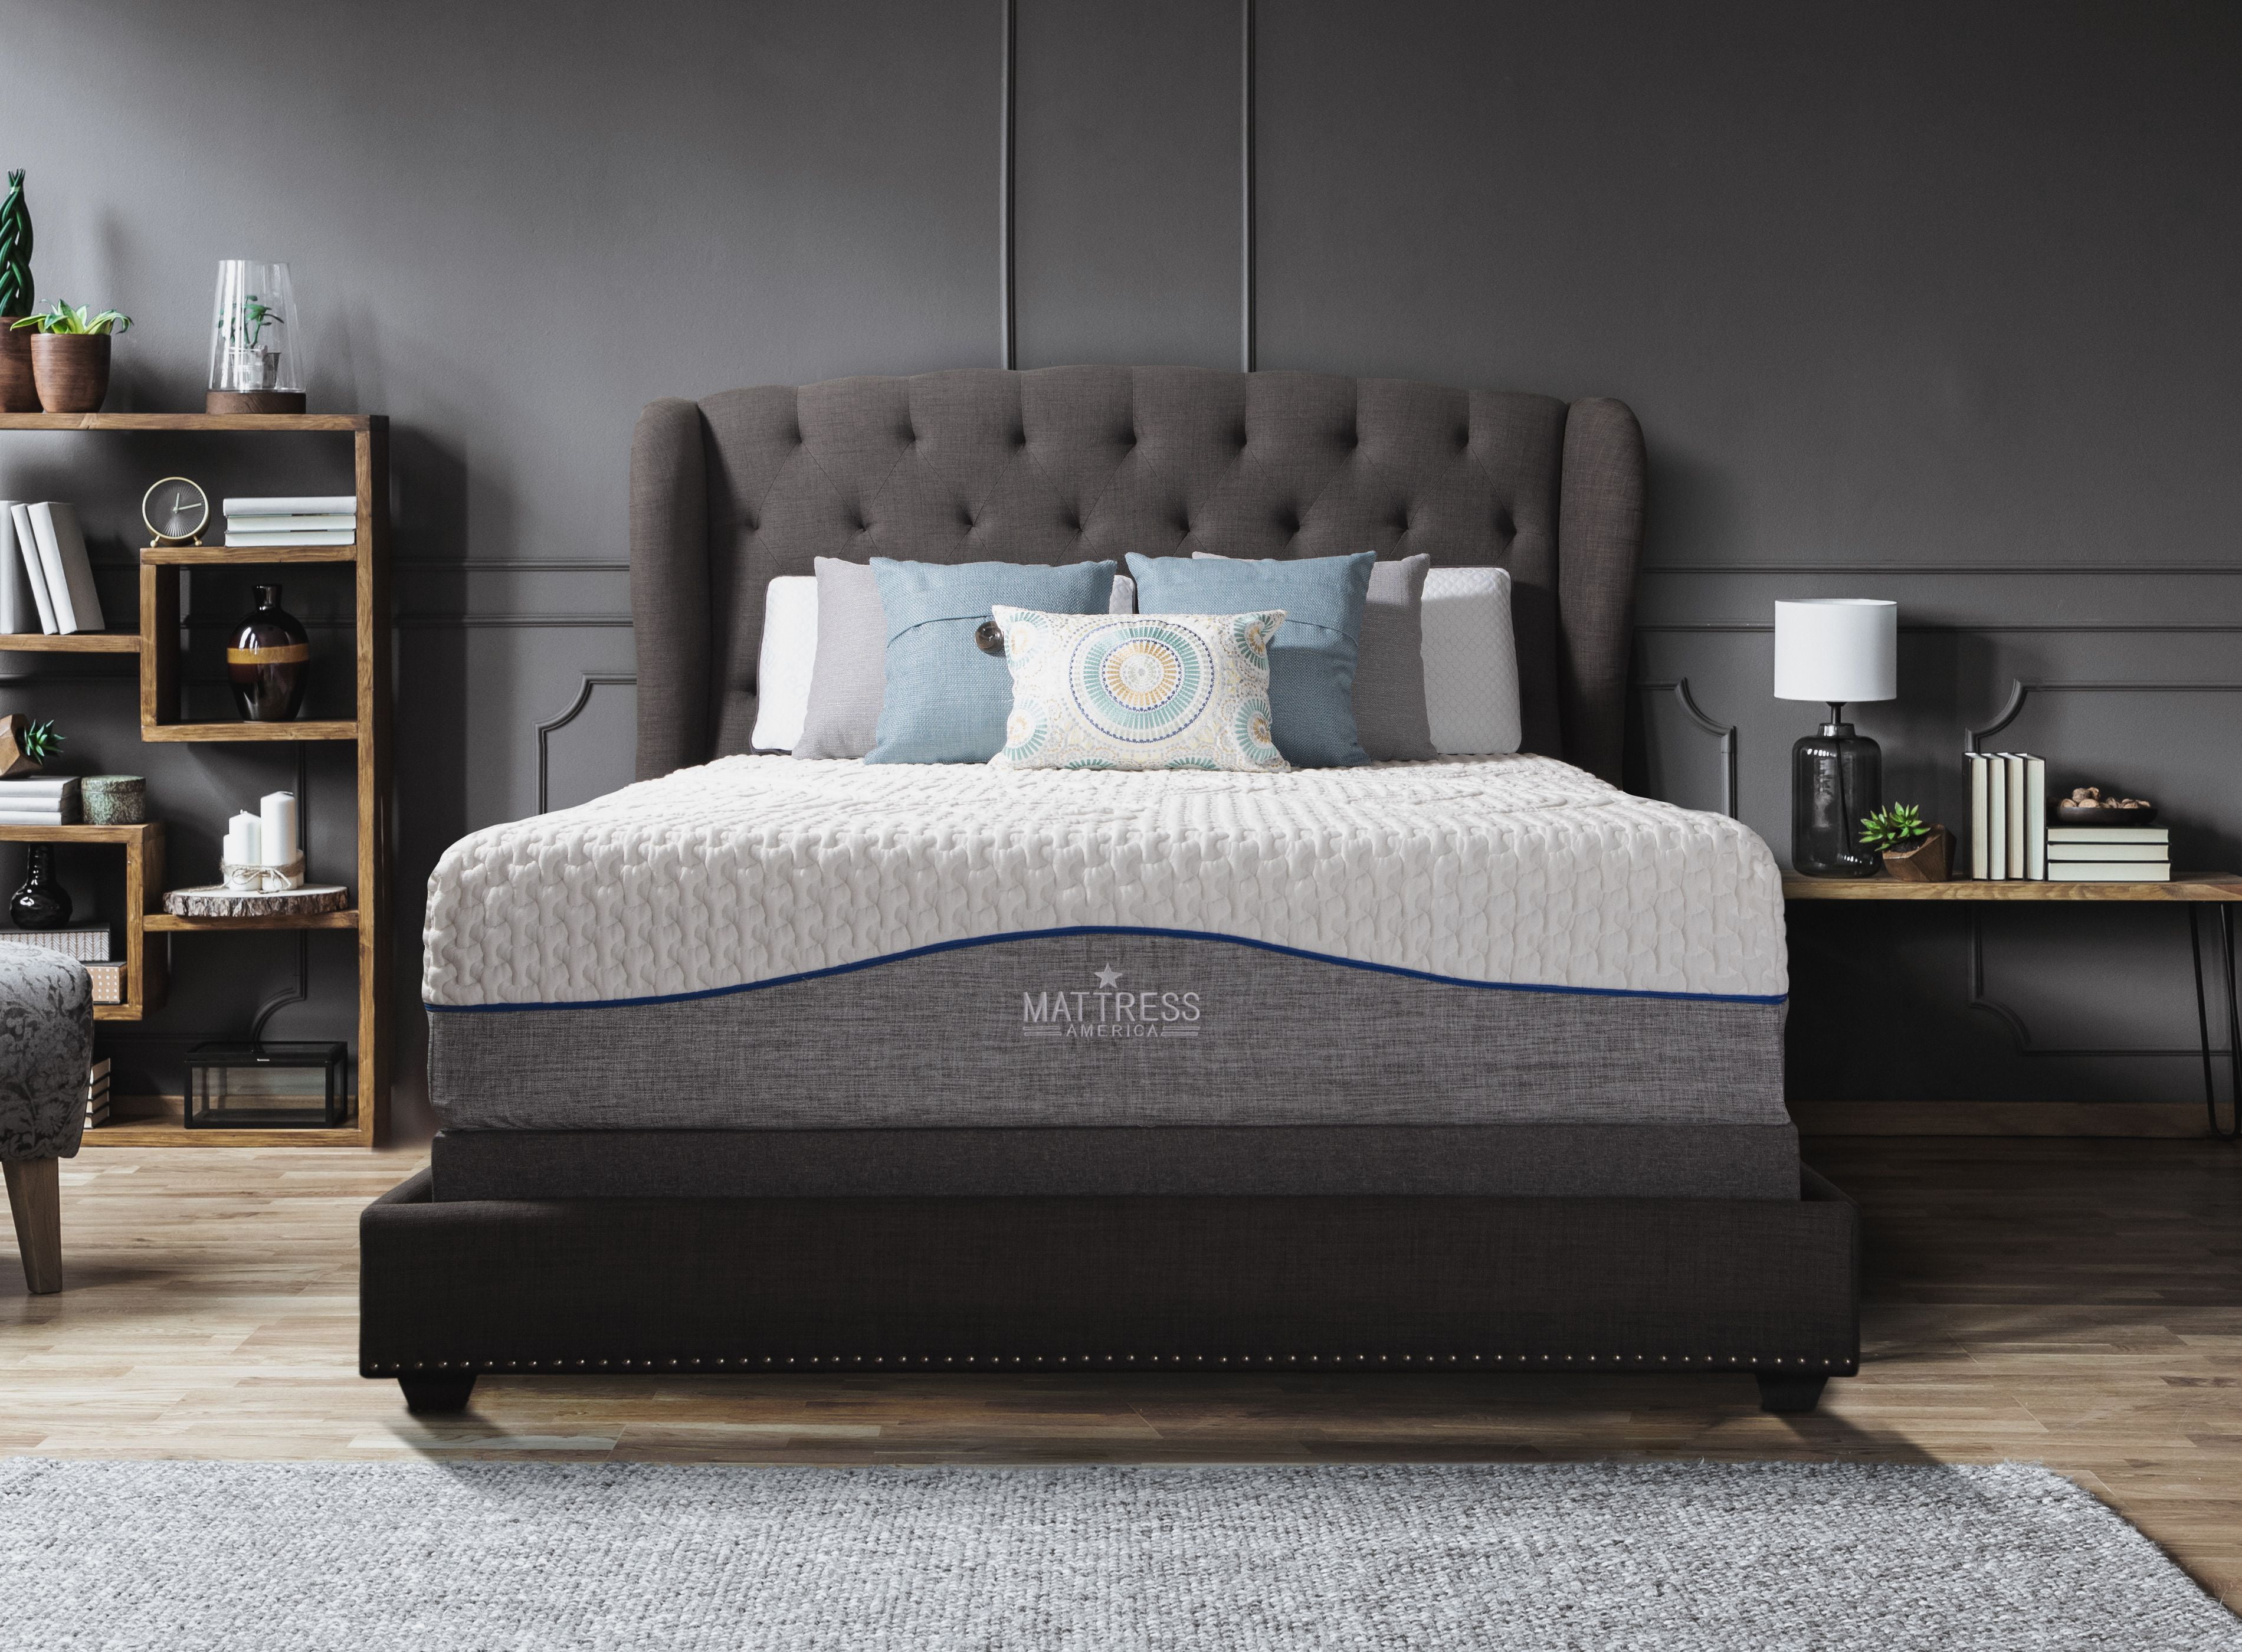 gel mattress for queen sleeper sofa